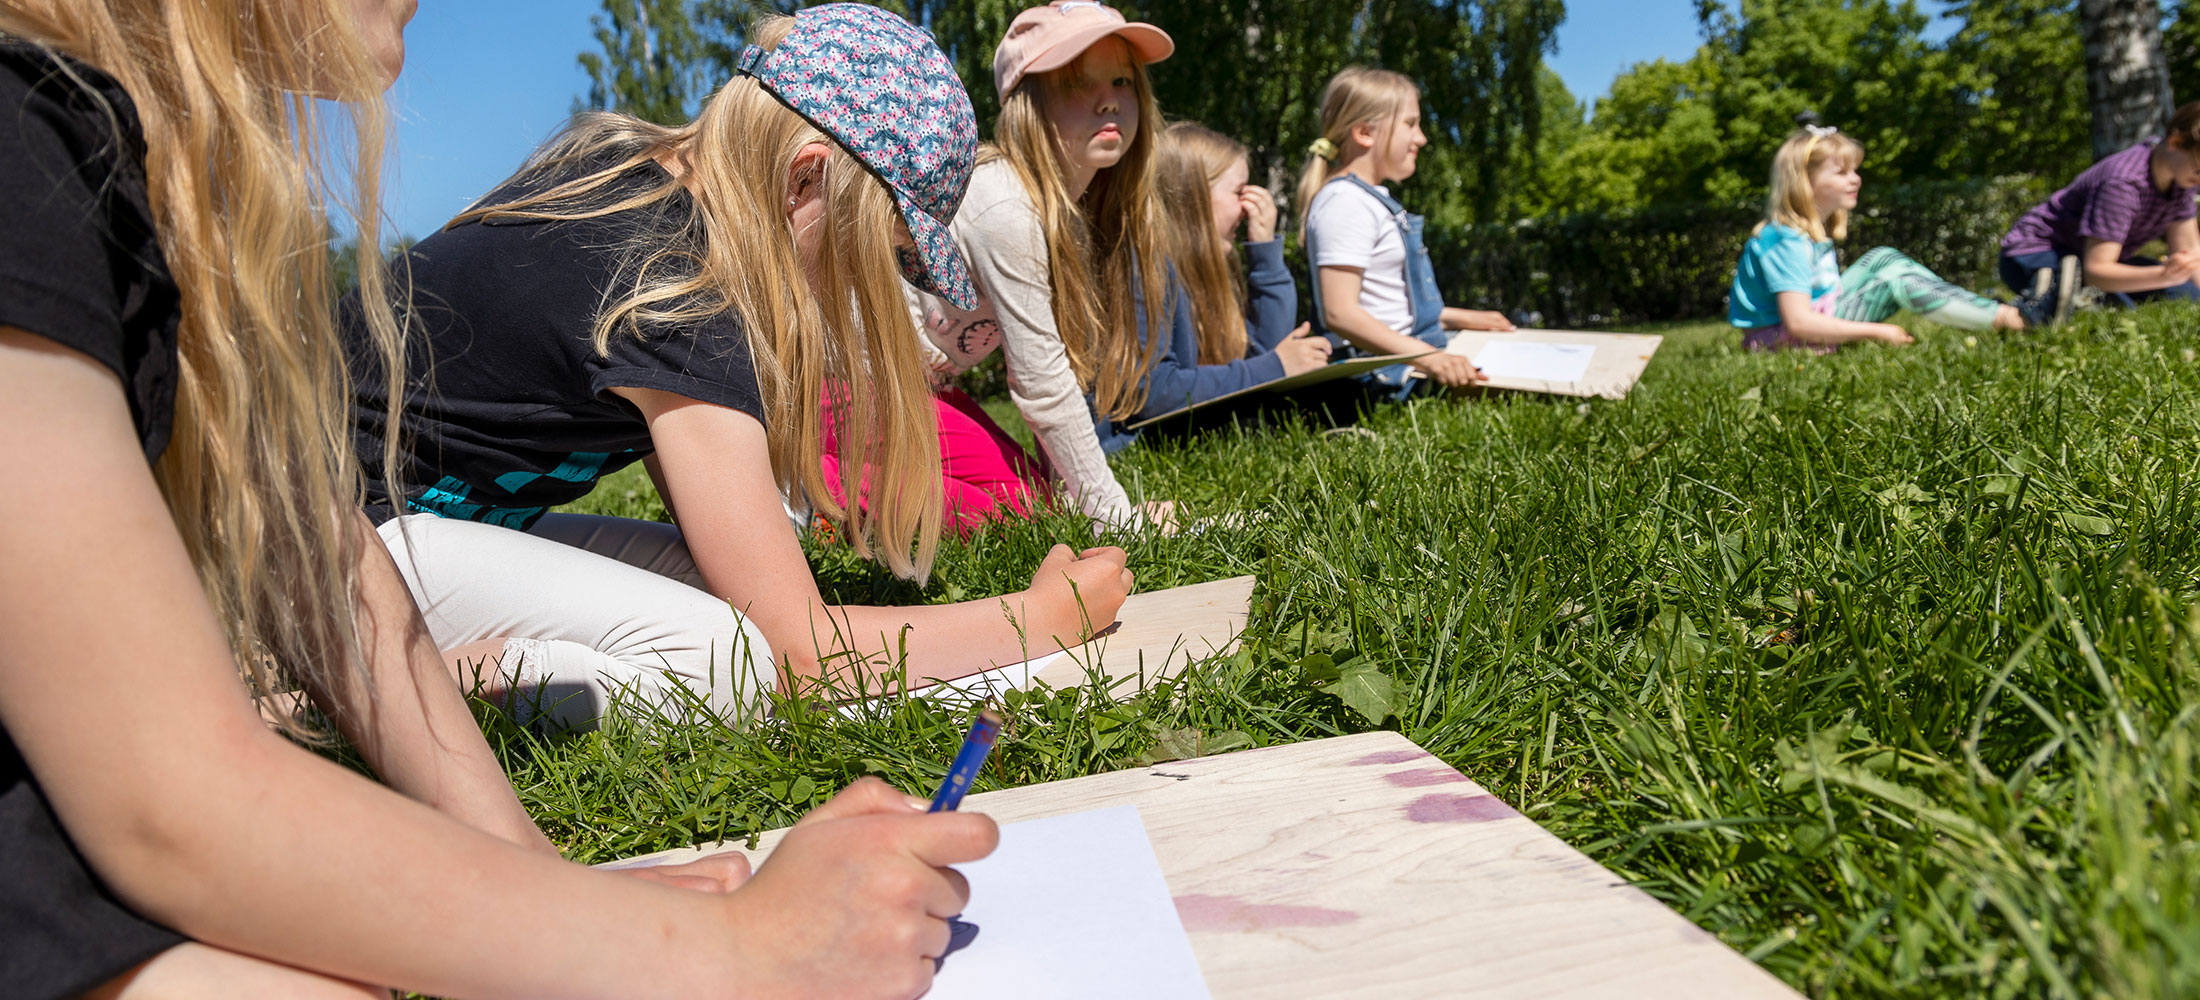 Kuopion kansalaisopisto, kursseja lapsille ja nuorille. Lapsia ulkona piirtämässä kesäkurssilla.